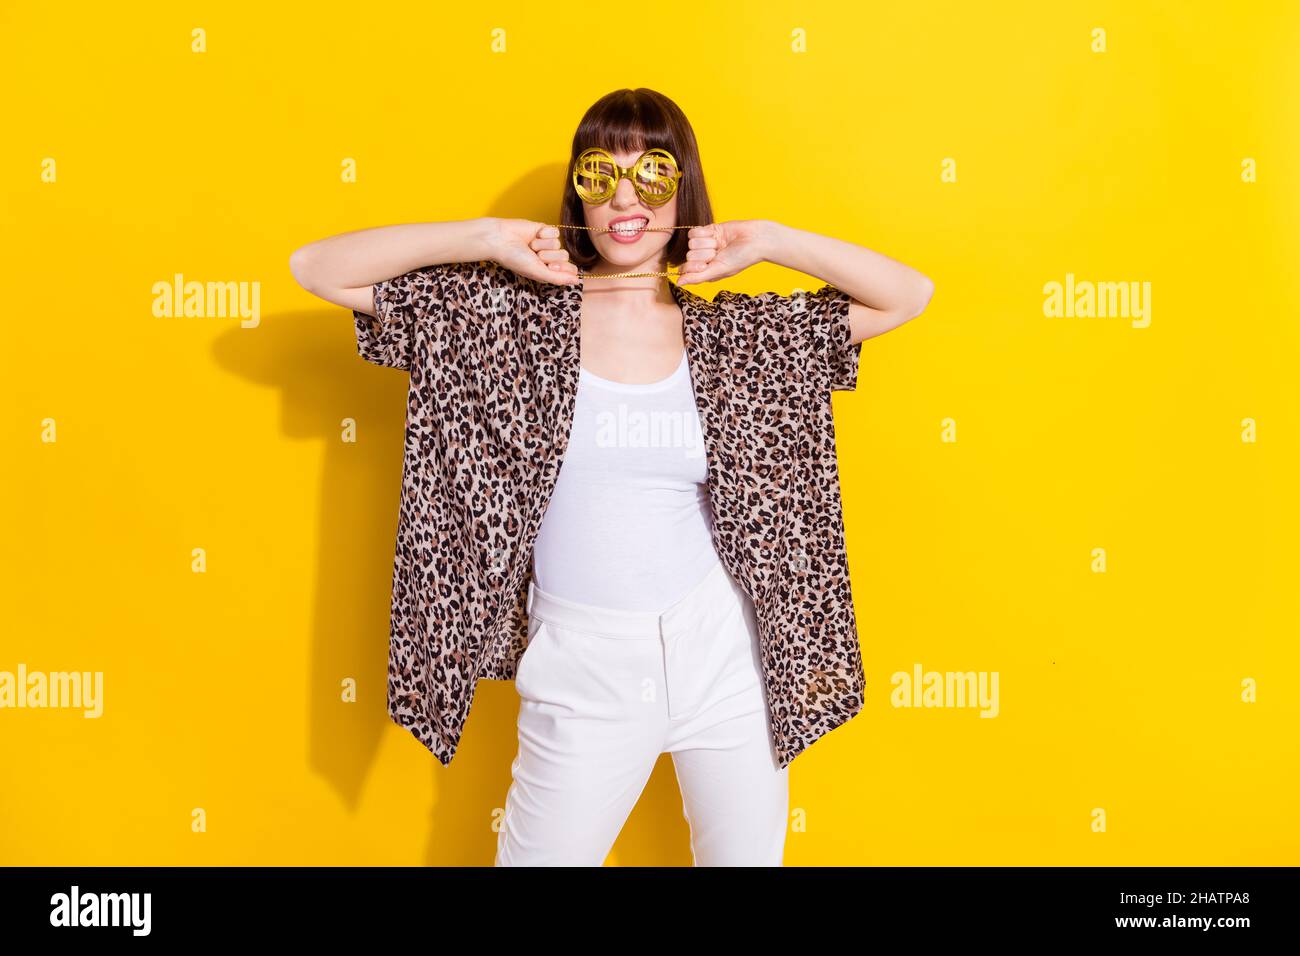 Foto von wohlhabenden Millennial junge Dame Bisskette tragen Brillen  Accessoires Leoparden Shirt isoliert auf gelbem Hintergrund Stockfotografie  - Alamy